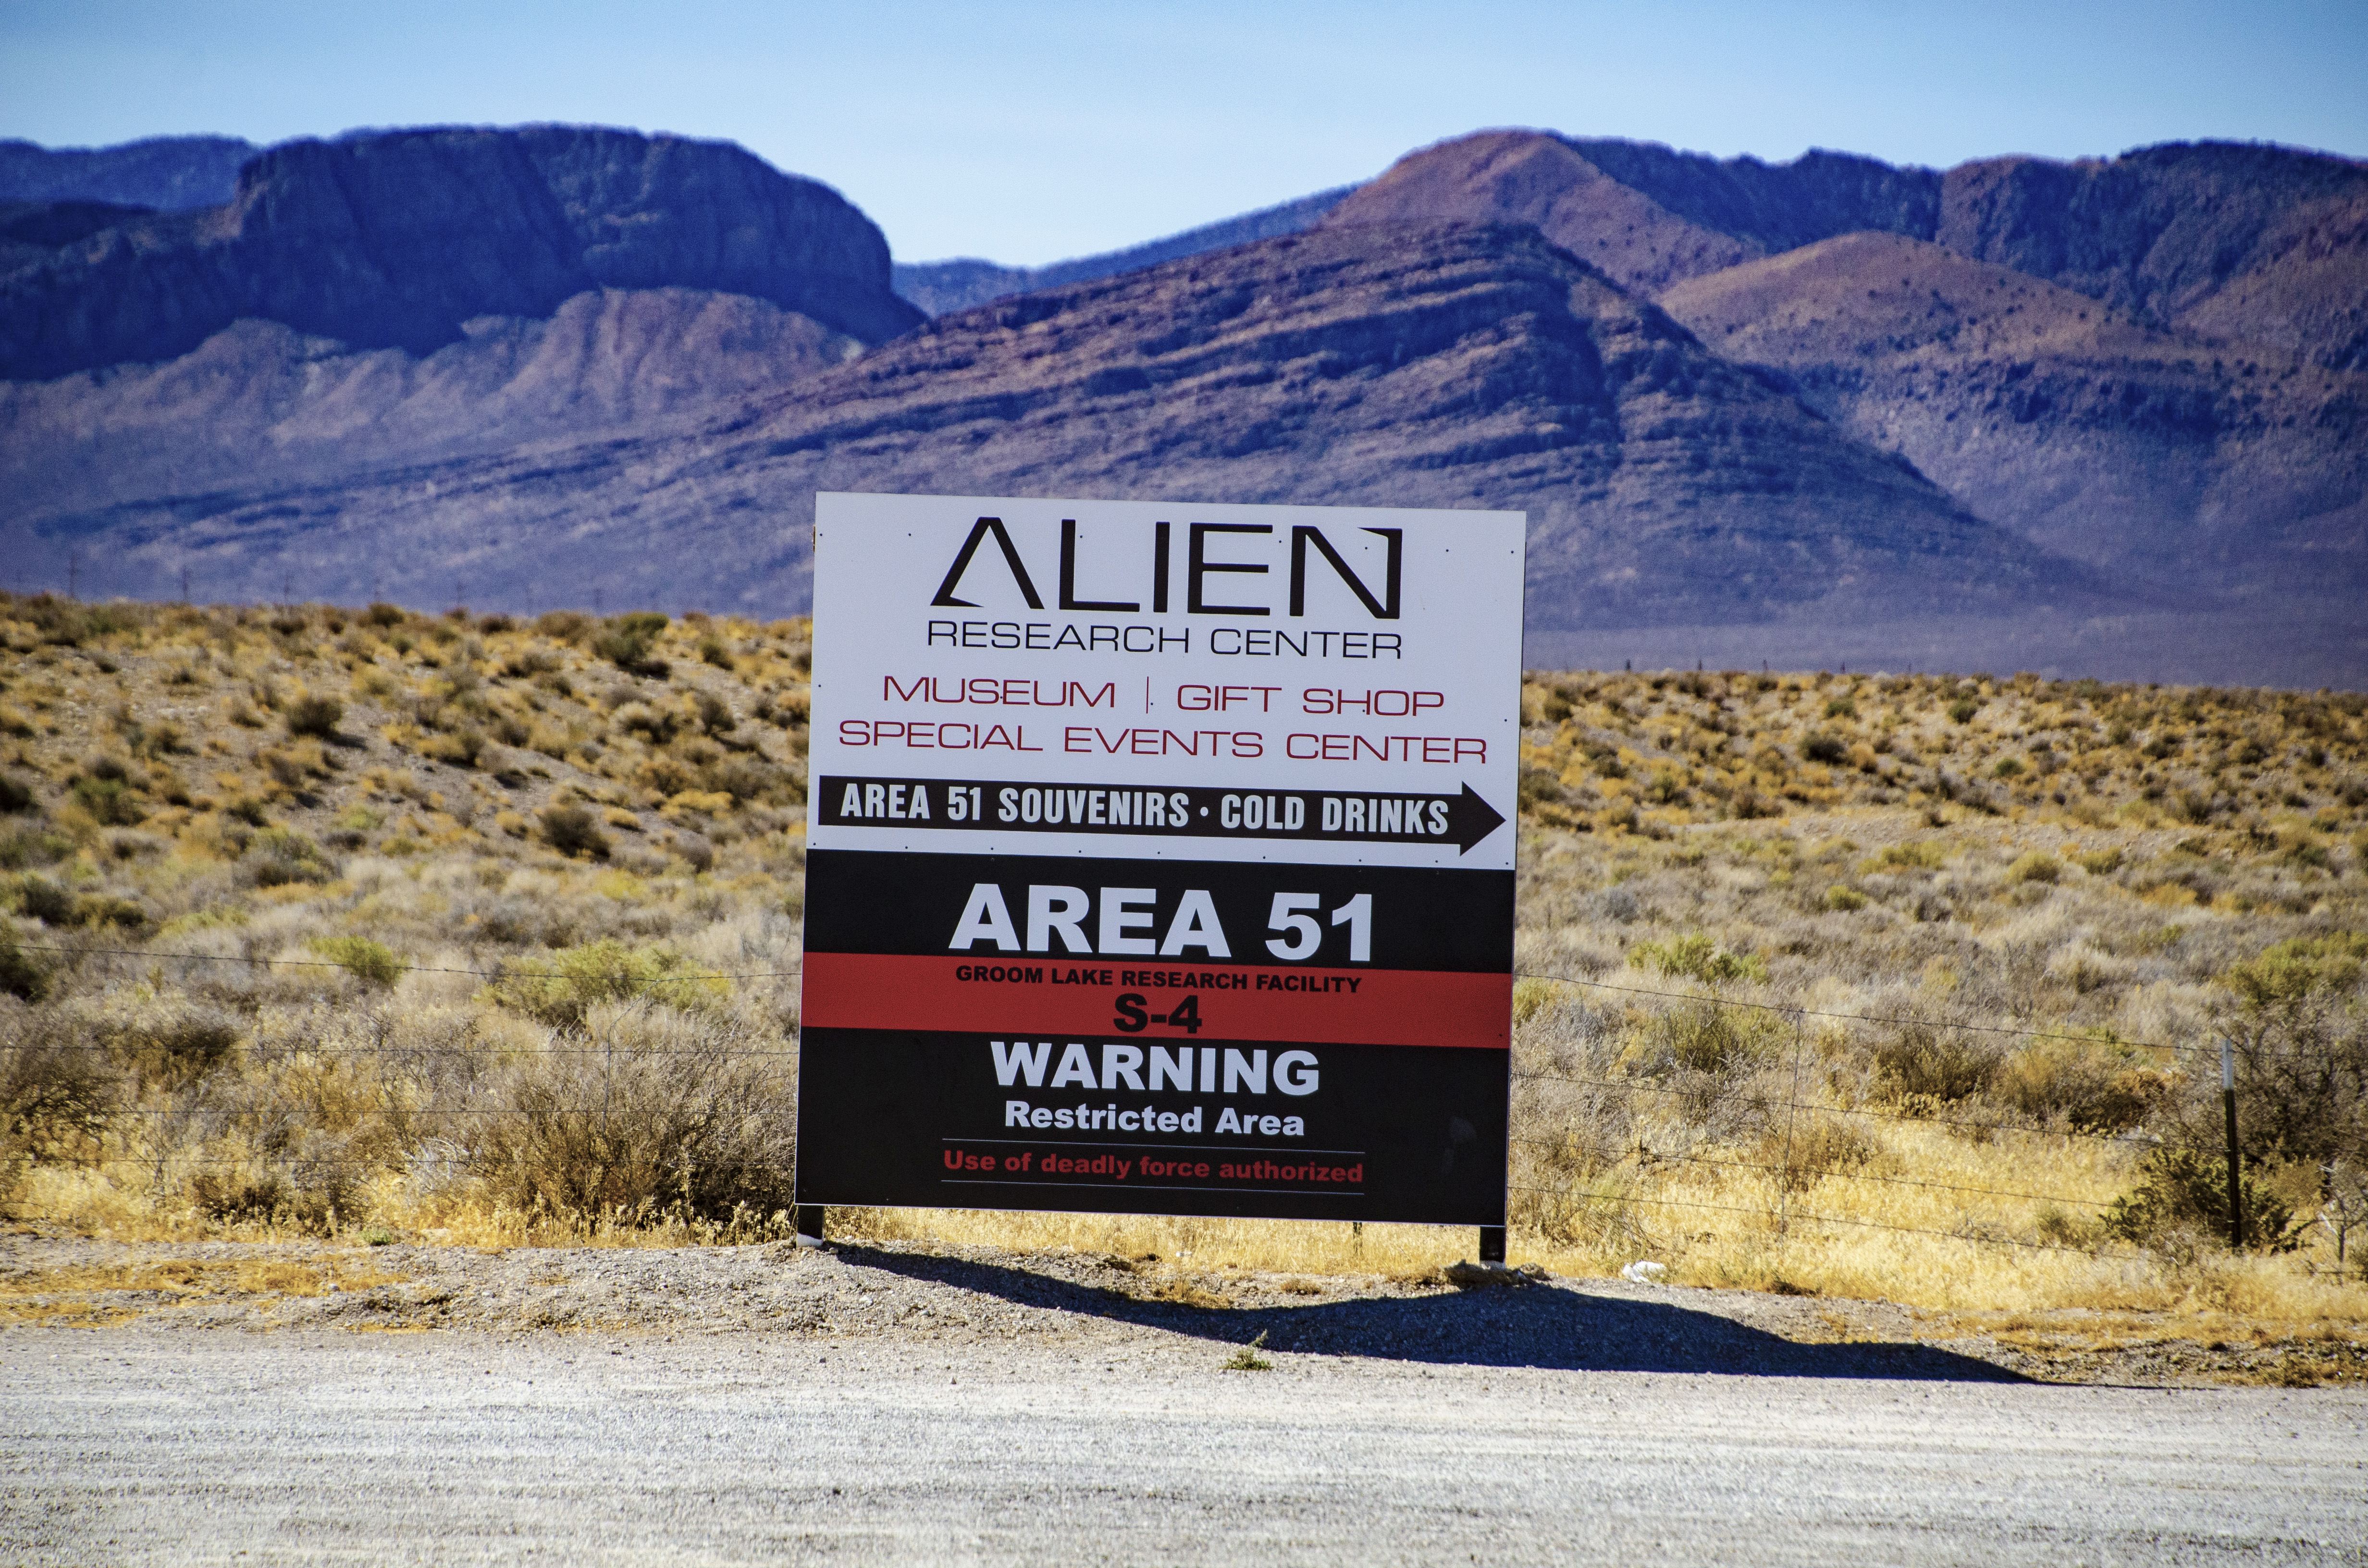 Die aktuelle Nutzung der Area 51 ist unbekannt und bleibt streng geheim